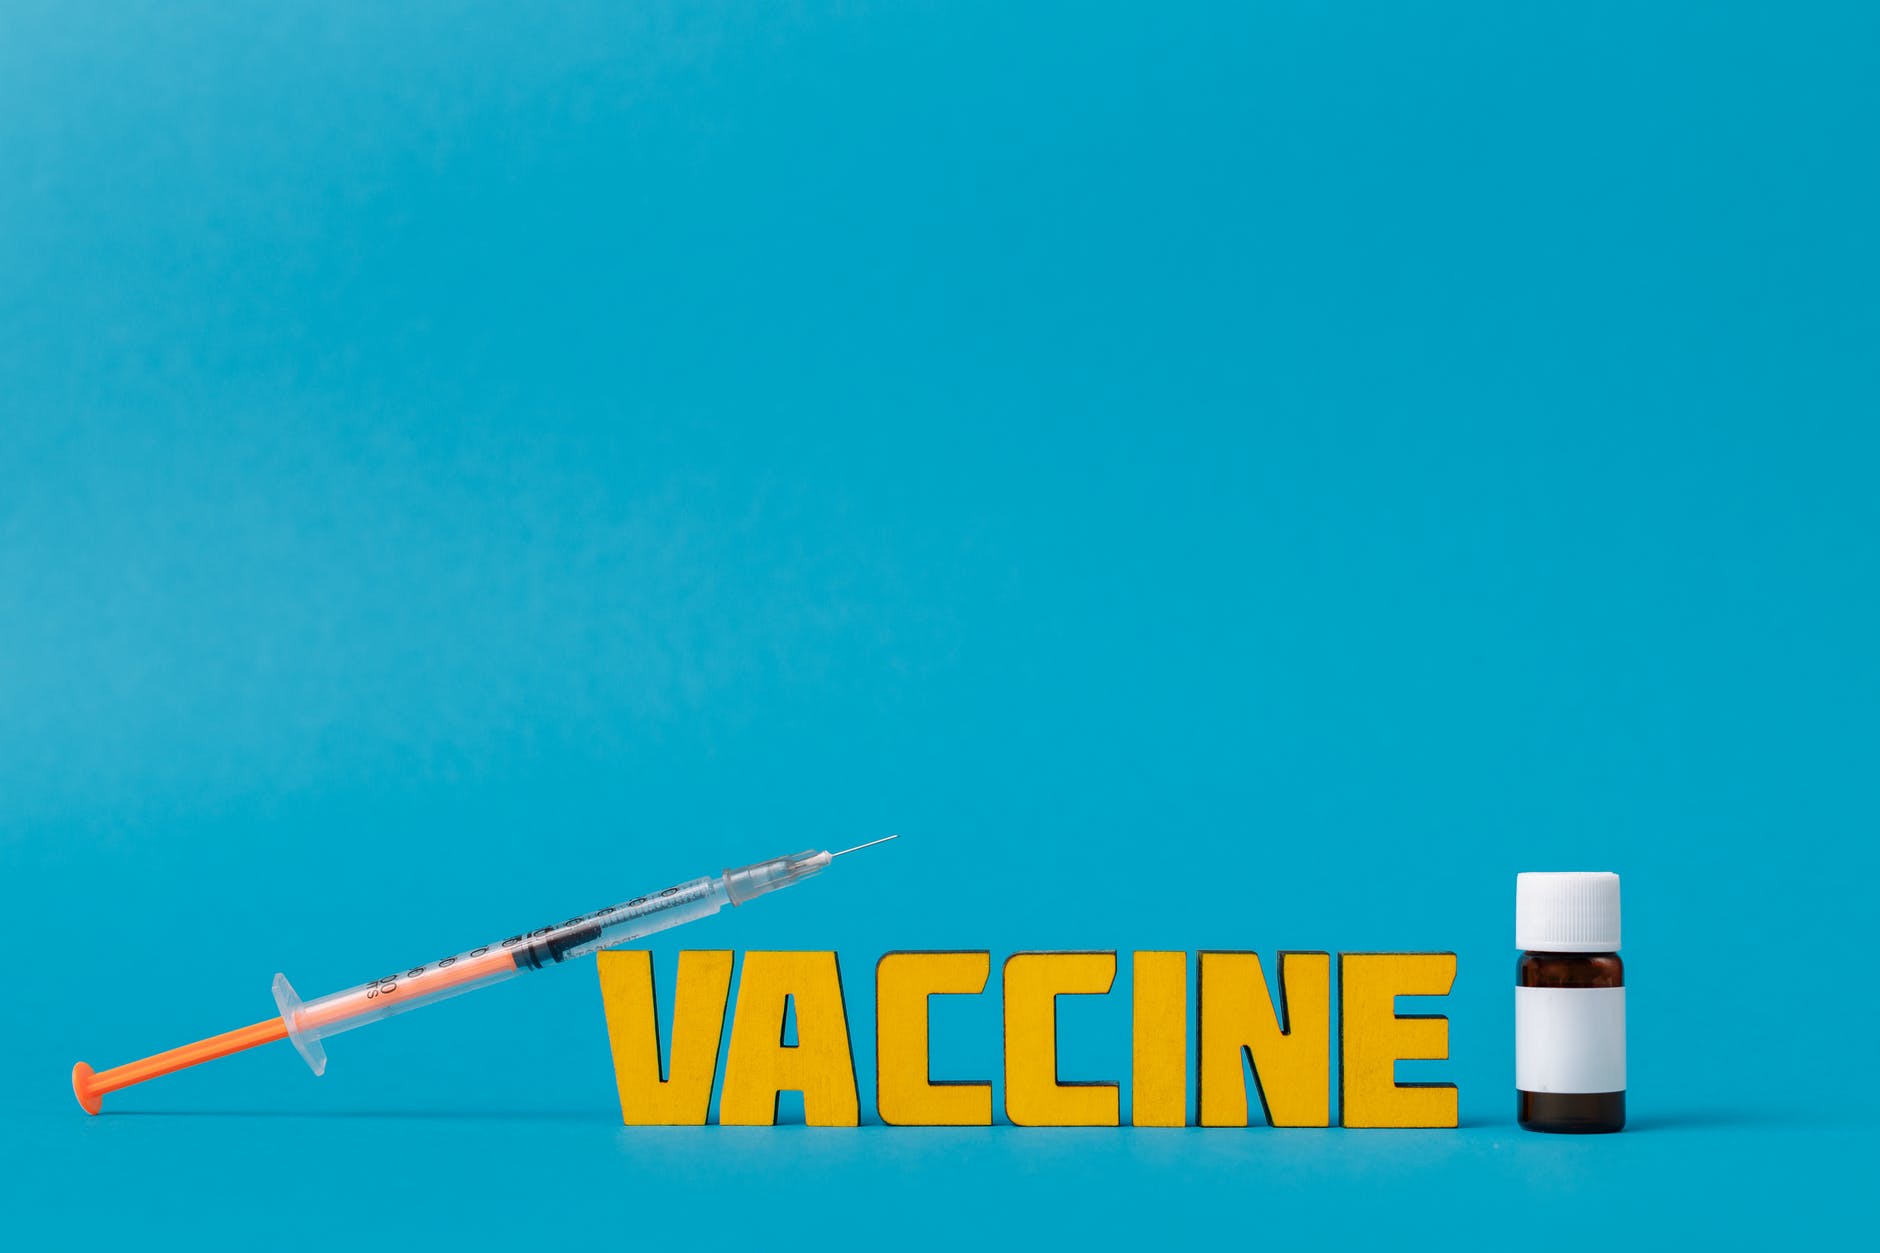 vaccine text